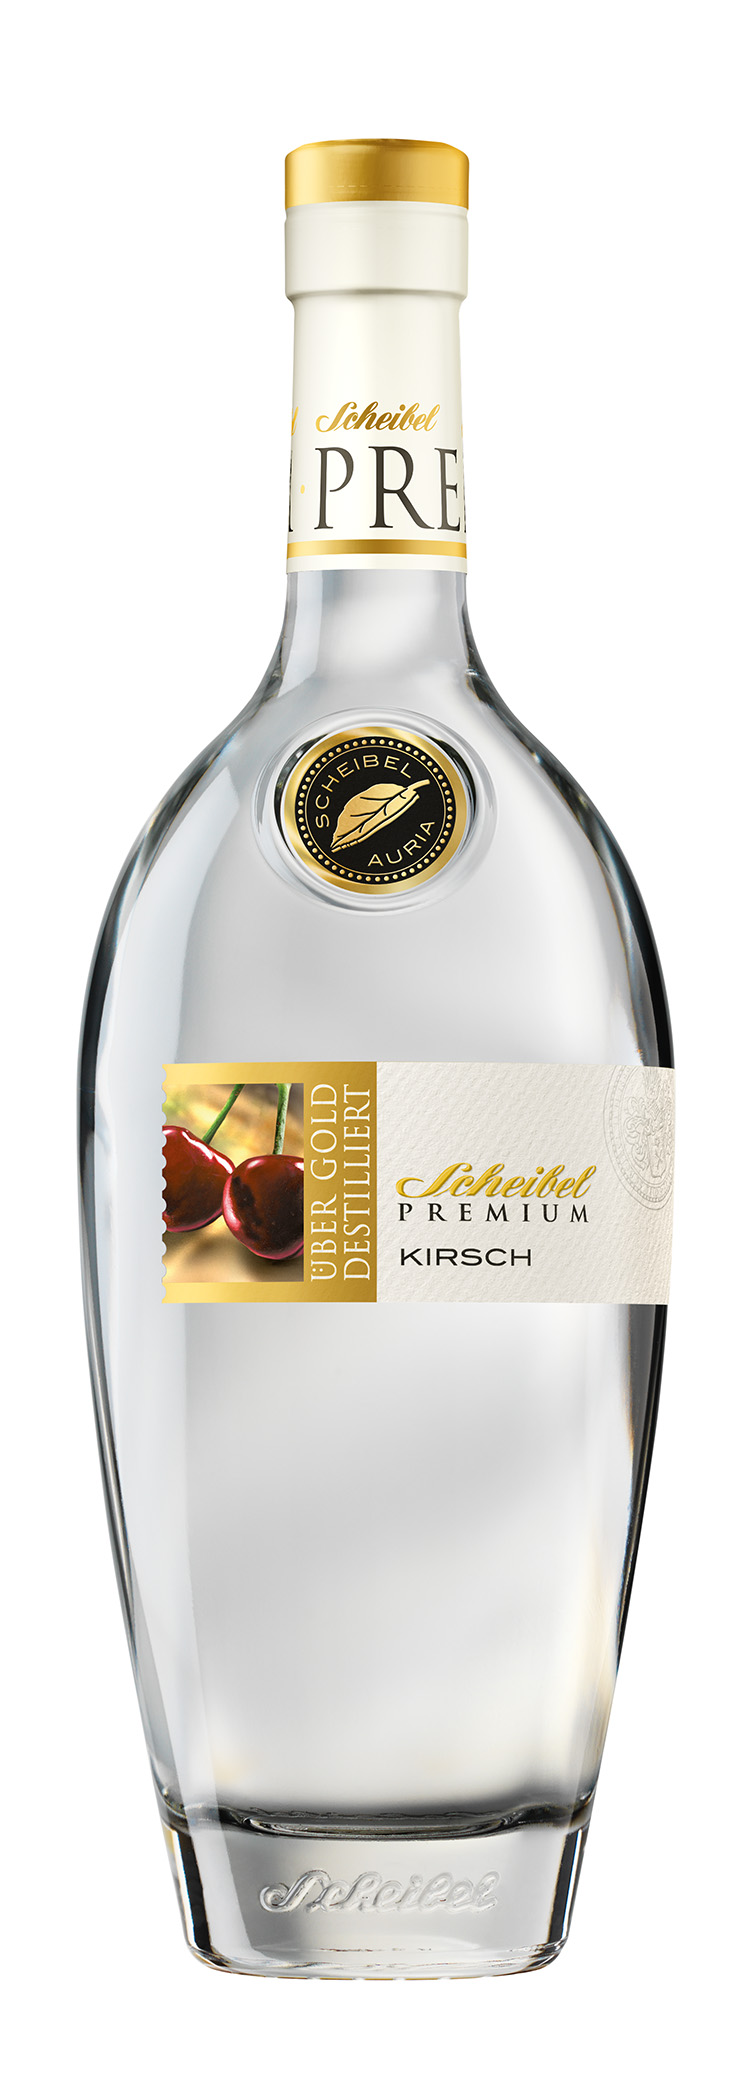 Scheibel Premium Kirsch-0